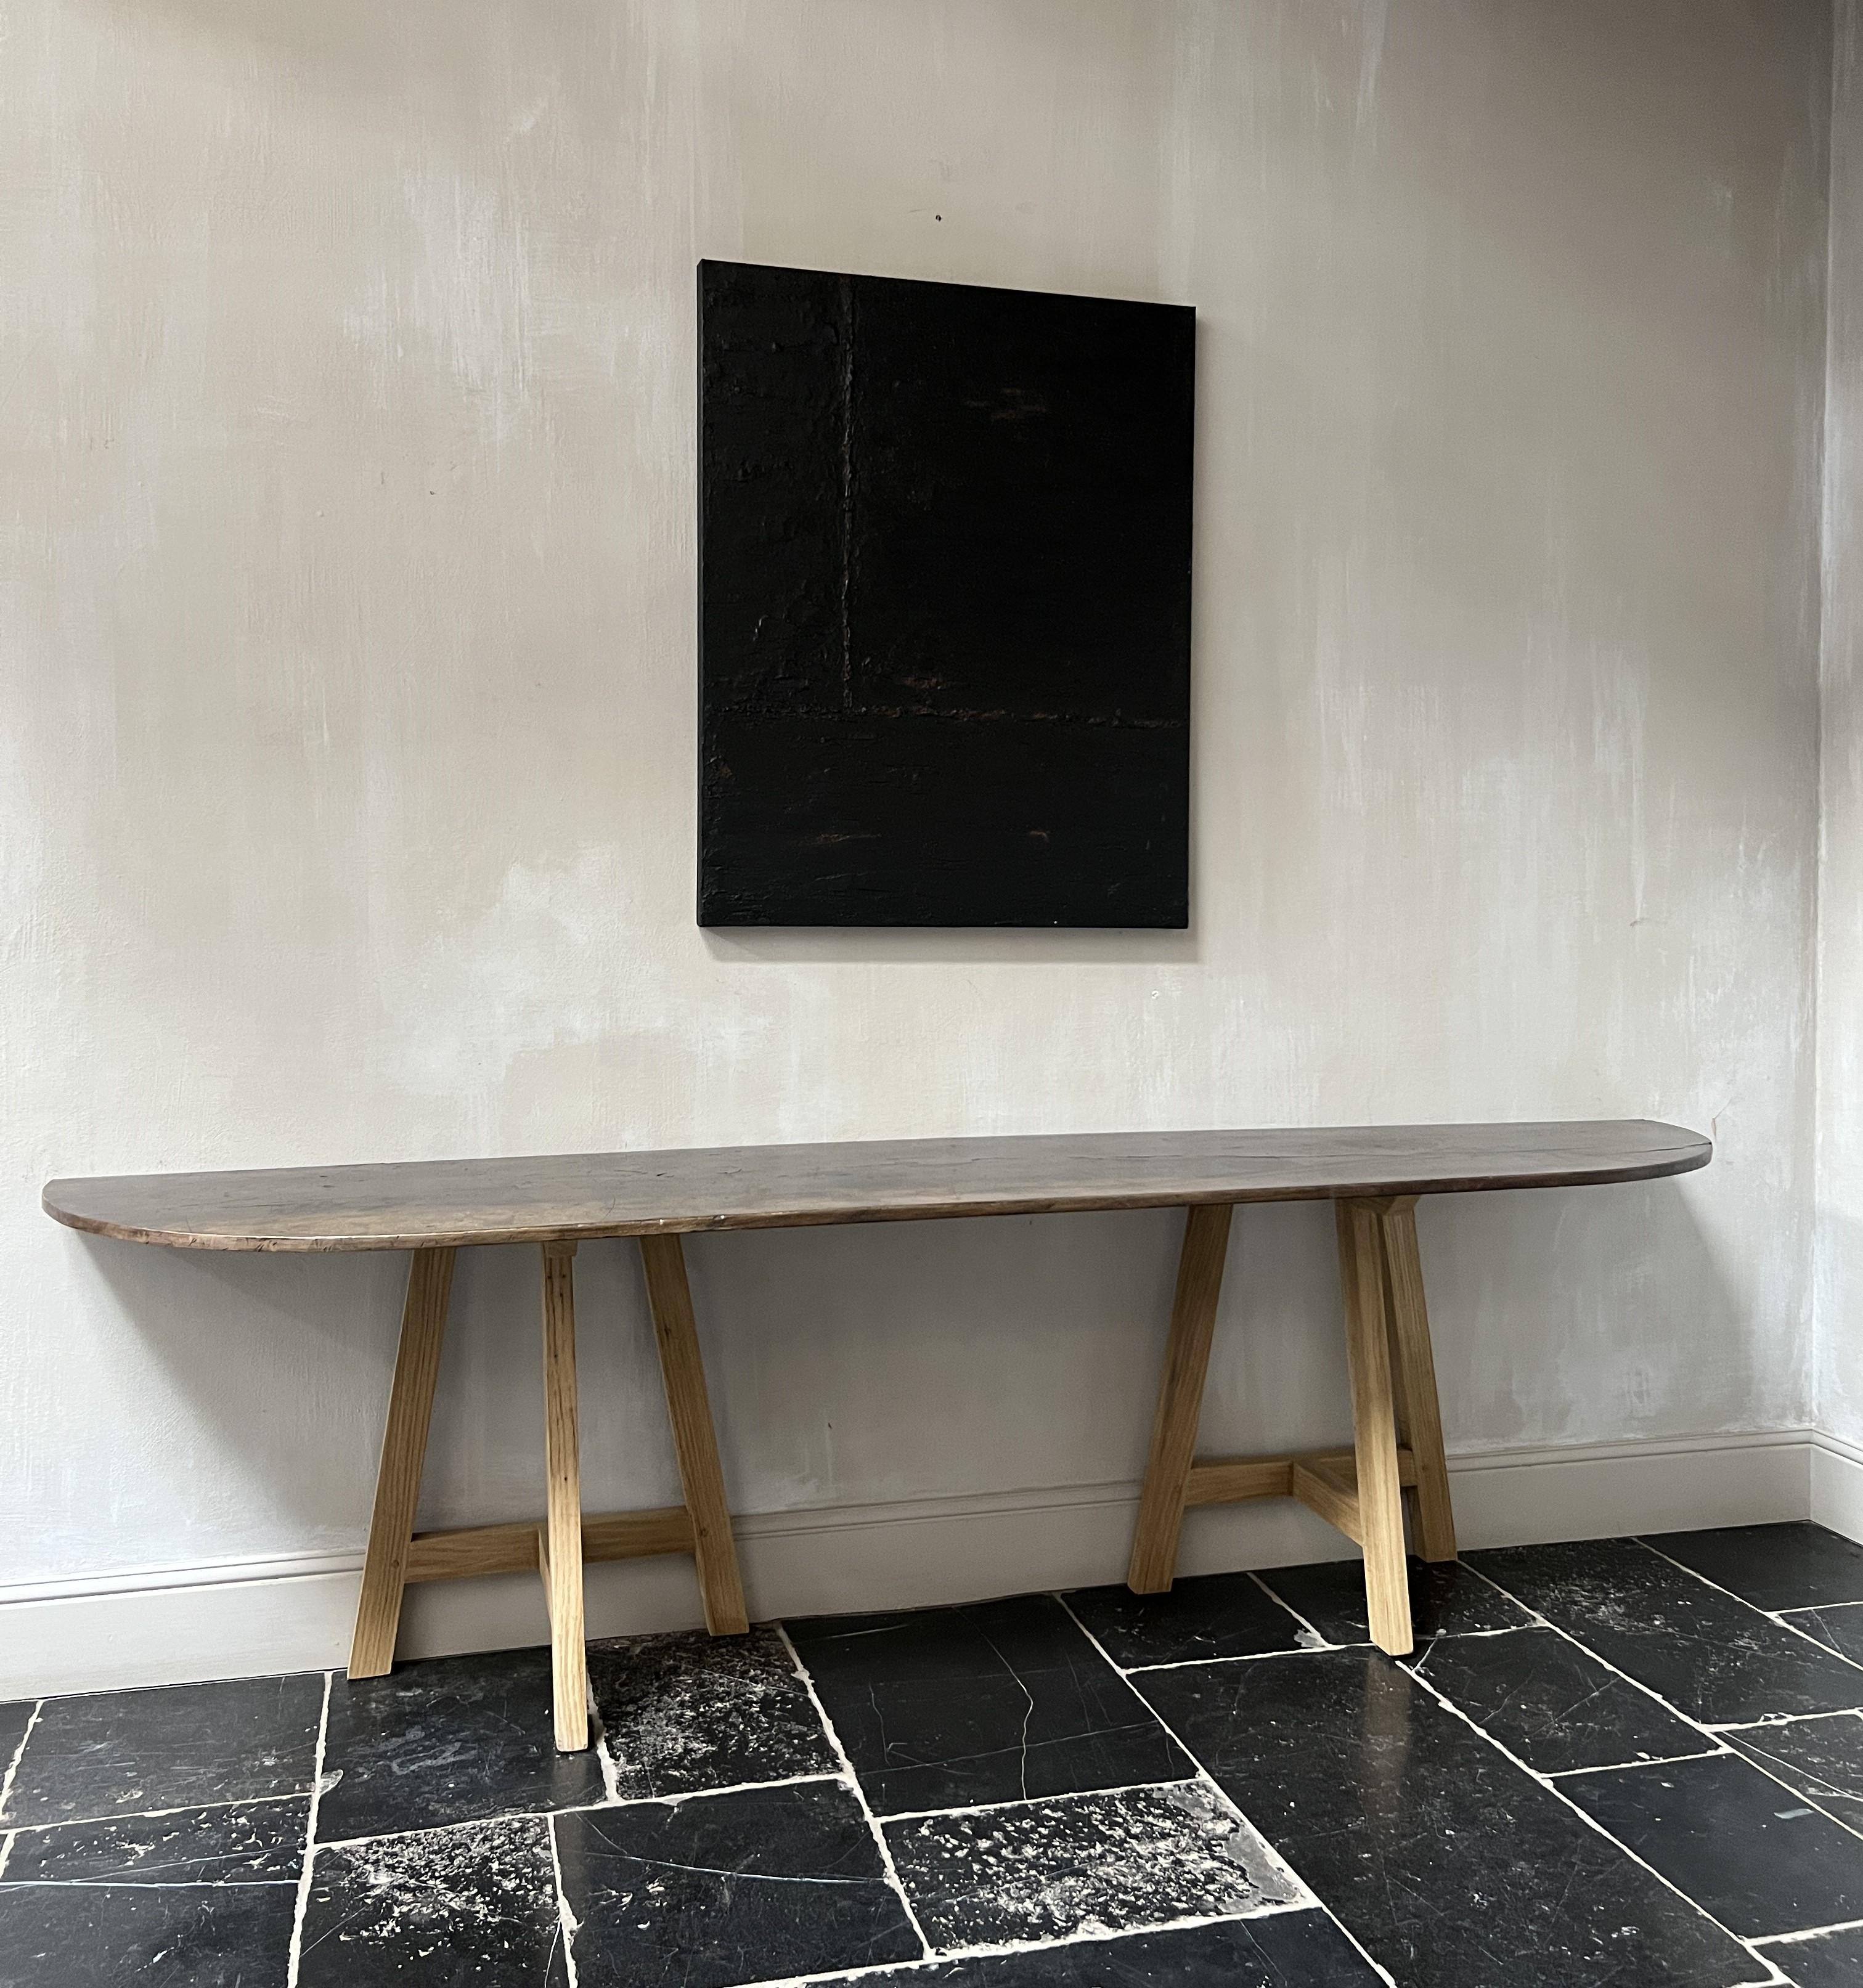 Nous avons conçu cette table d'appoint à partir d'un plateau en noyer italien du XIXe siècle. Les bases en chêne ont été fabriquées sur mesure à partir de poutres datant du 18e siècle. Outre l'aspect recyclage de nos meubles, nous nous inspirons